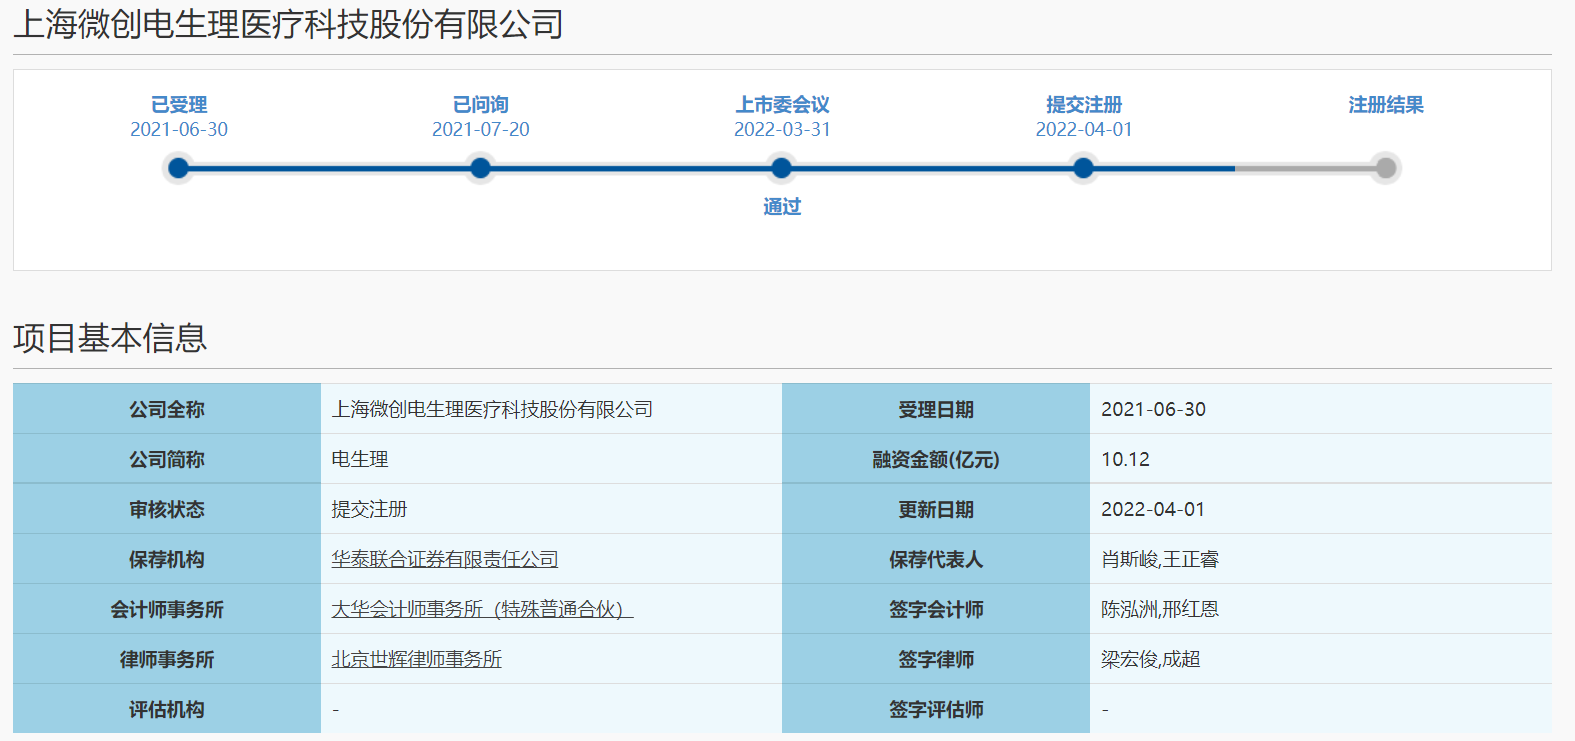 上海微创电生理科创板IPO提交注册 完成三轮问询回复